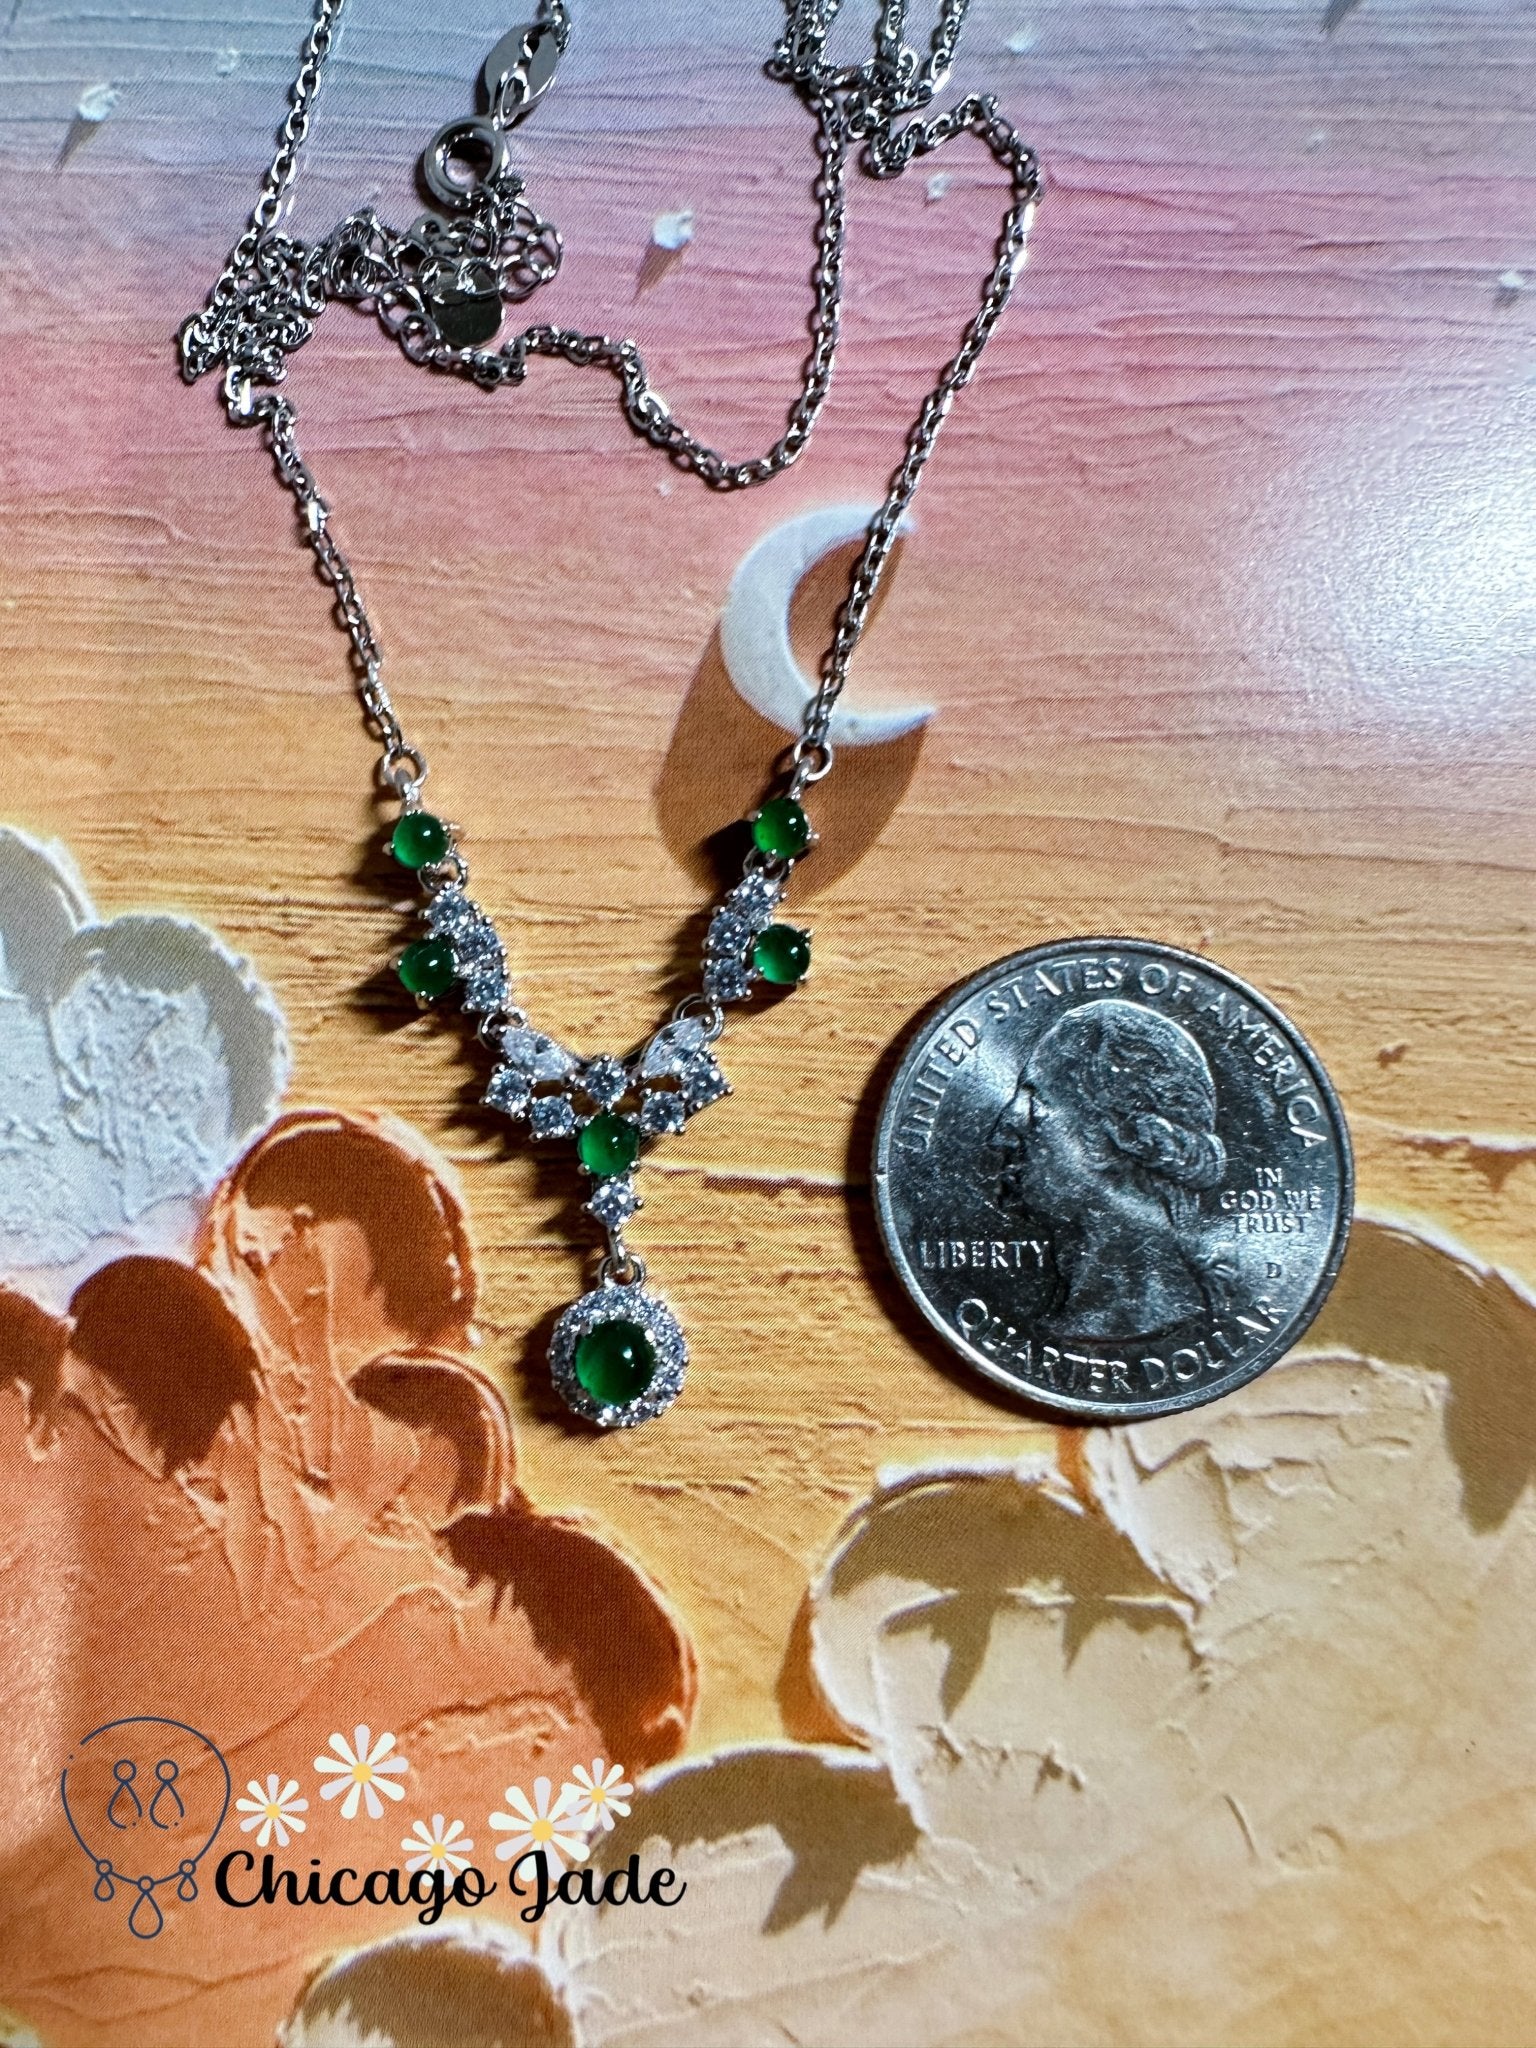 Bright green six stone jadeite jade S925 sterling silver necklace - Chicago Jadeanniversarybirthday giftengagementChicago Jade